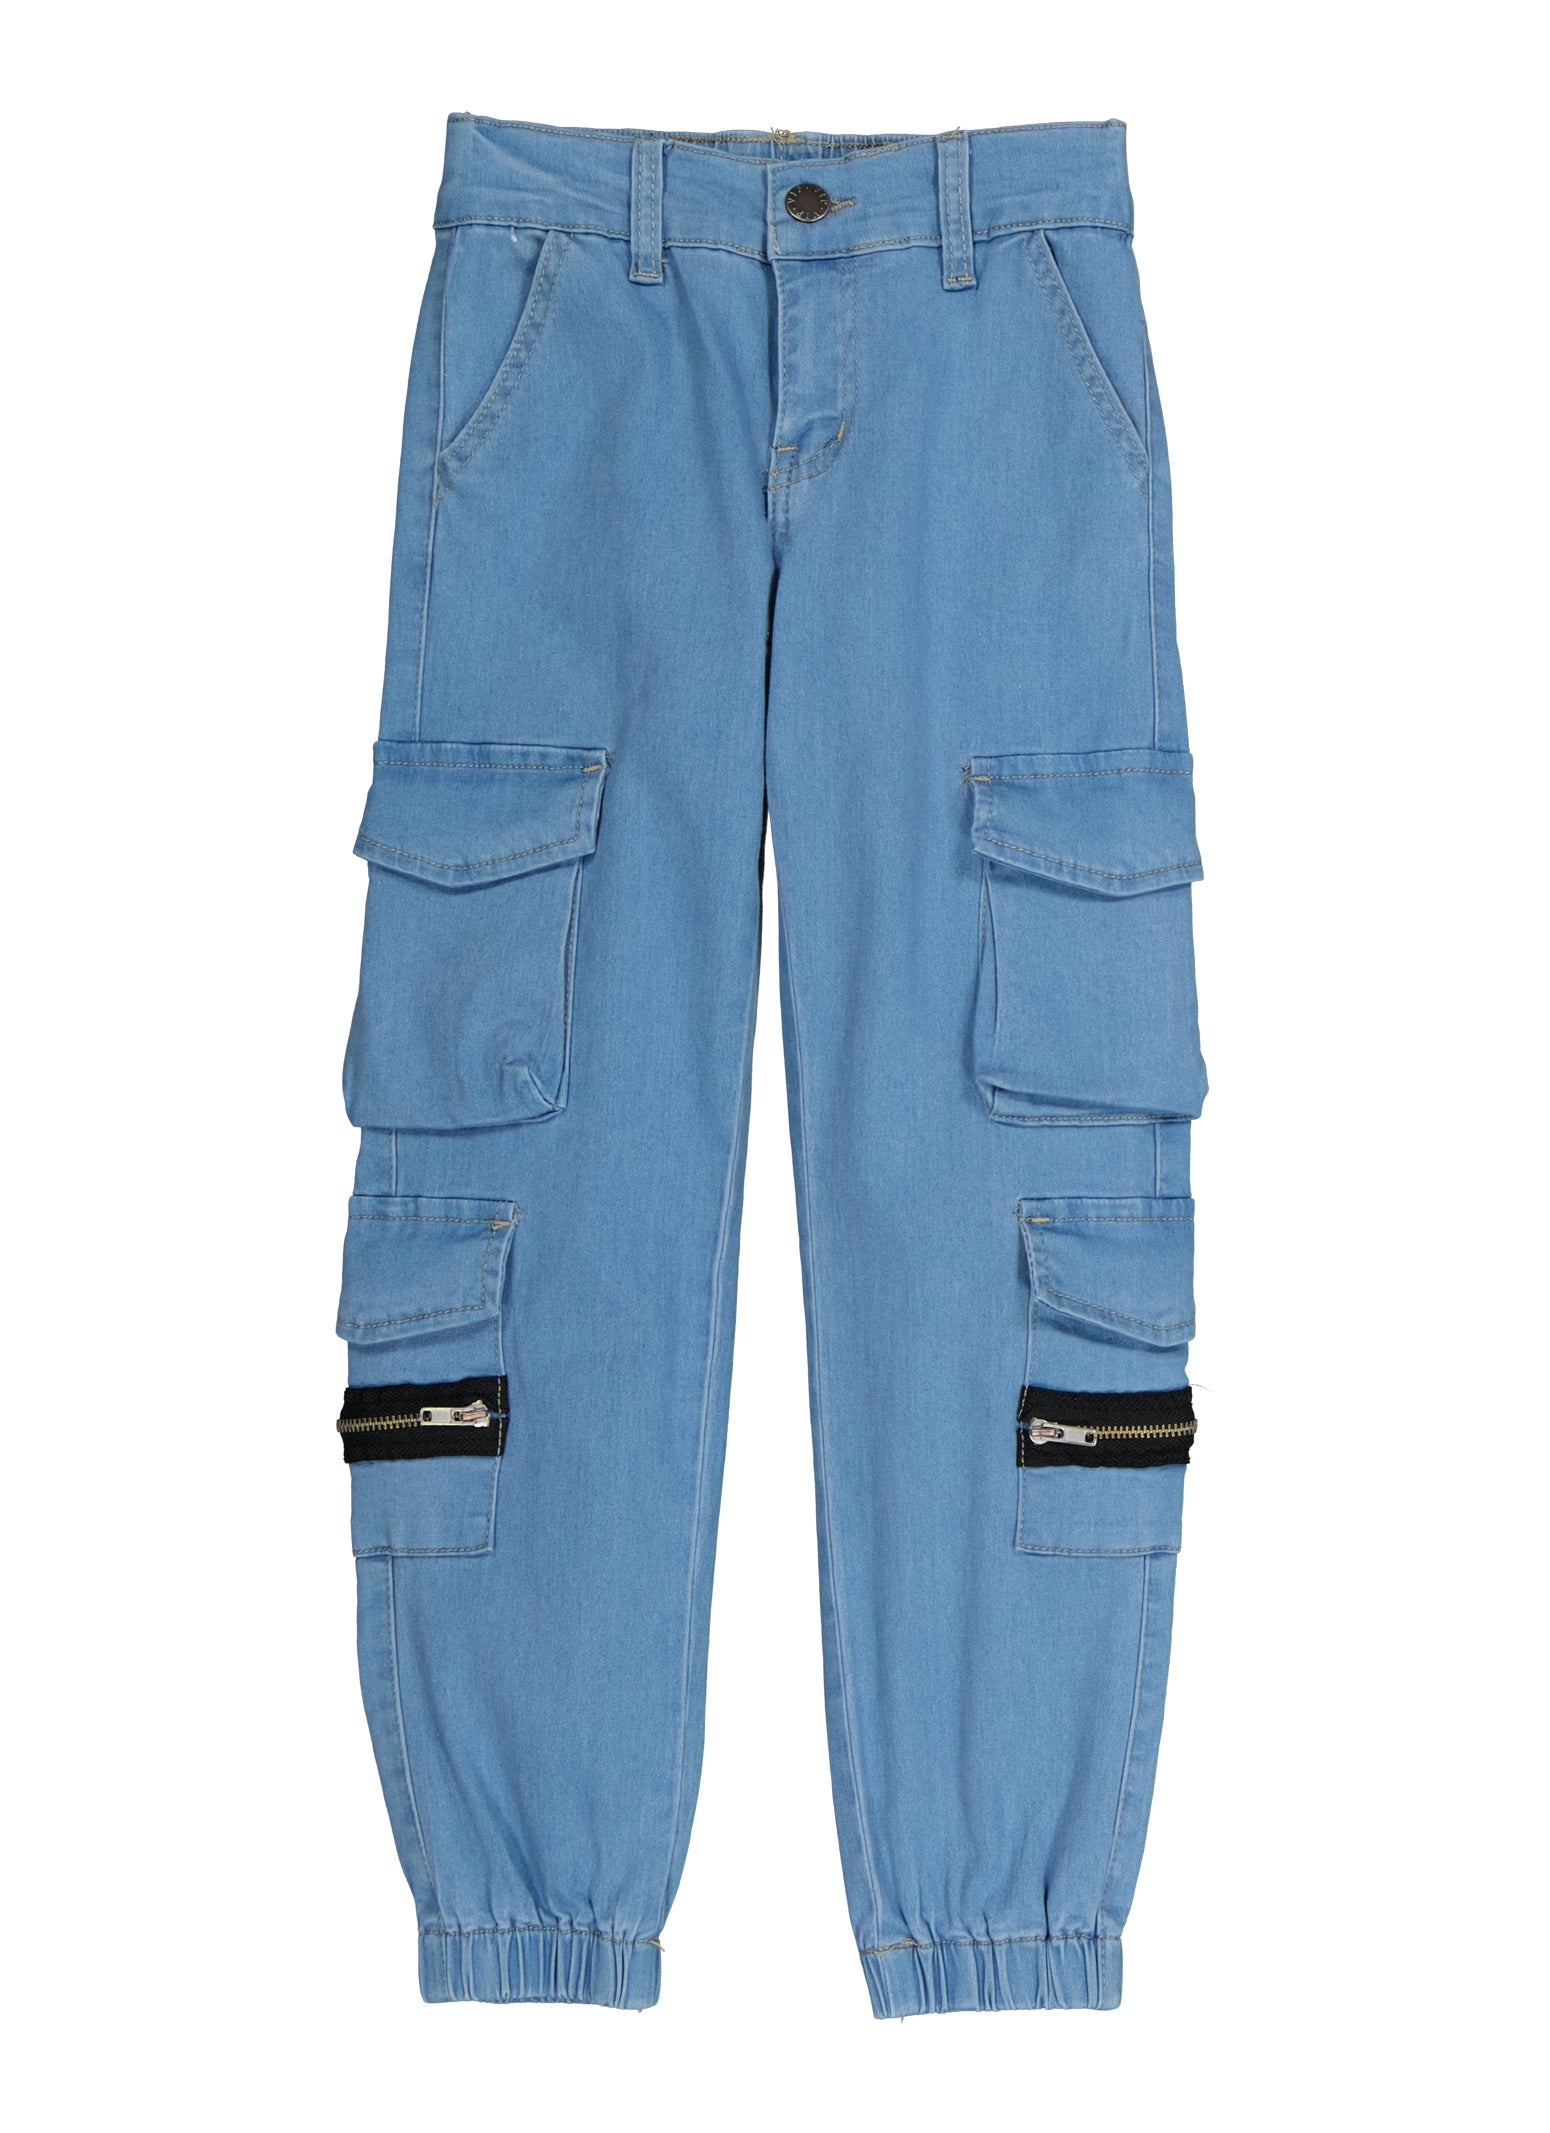 Denim cargo trousers - Light denim blue - Ladies